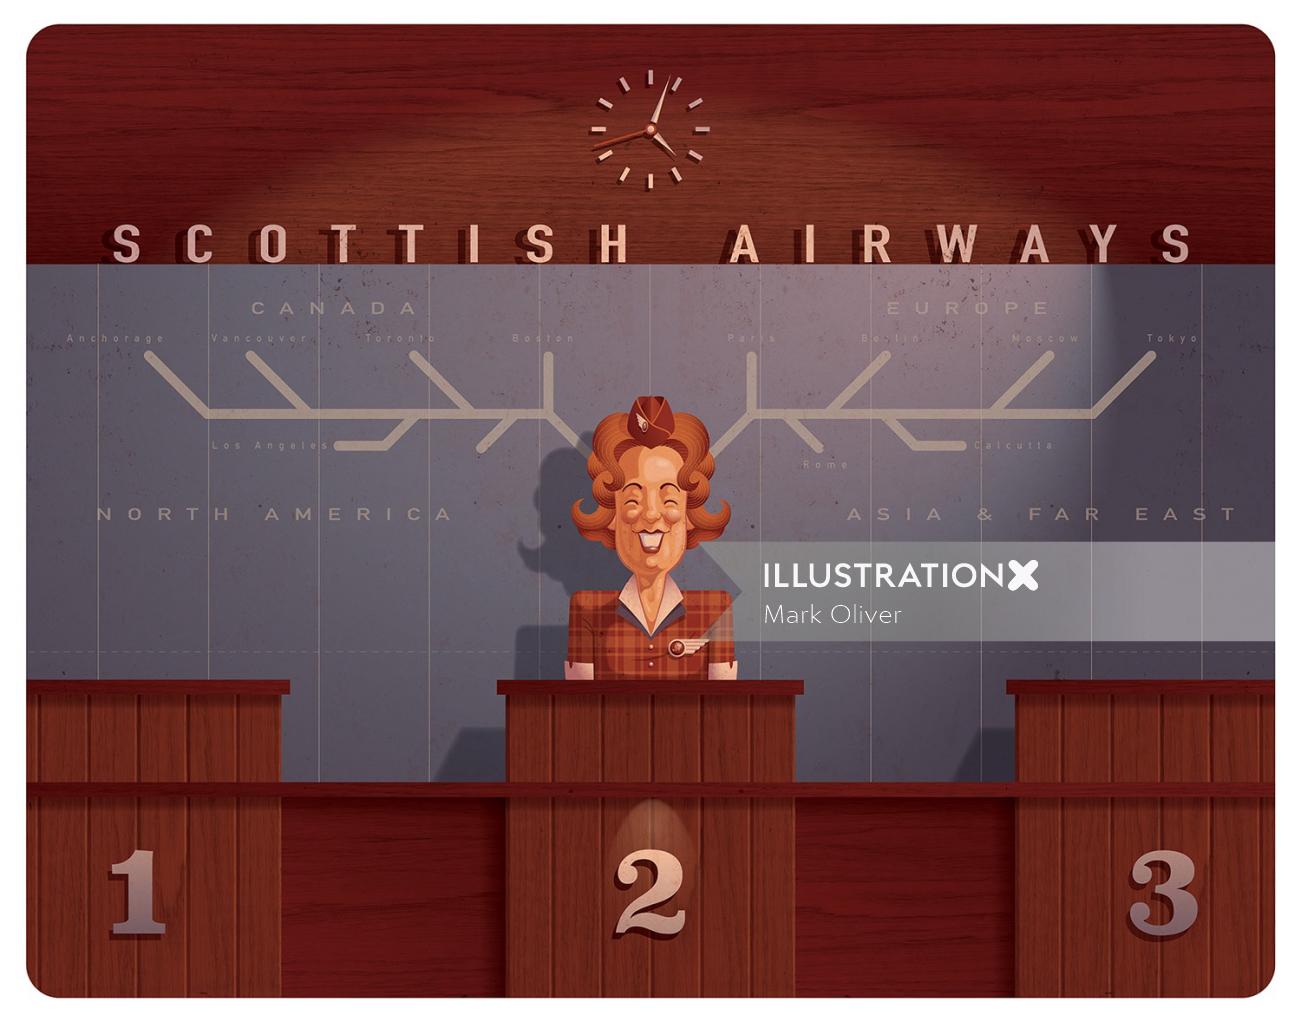 Voies aériennes écossaises illustrées par Mark Oliver